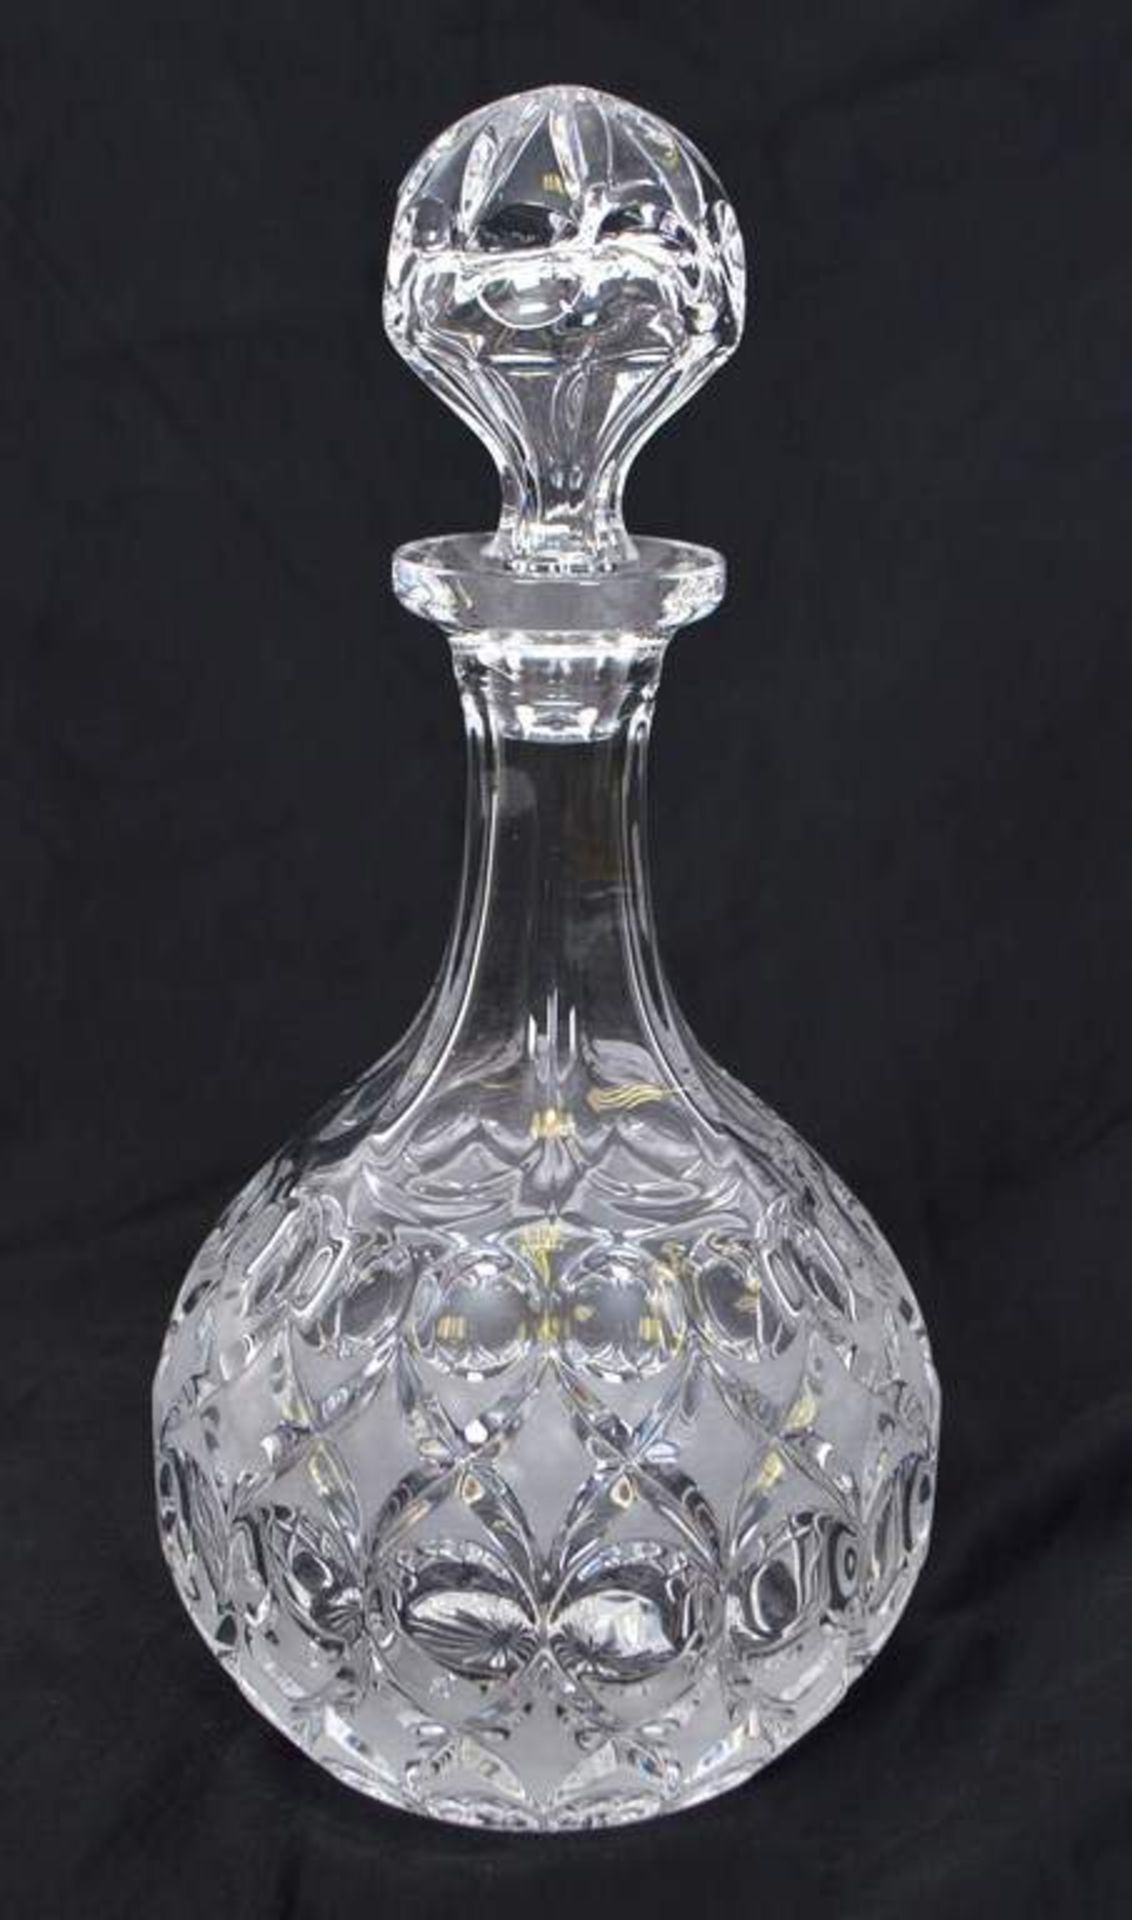 Karaffe farbl. Kristallglas, geschliffen verziert, gebaucht, H 29 cm